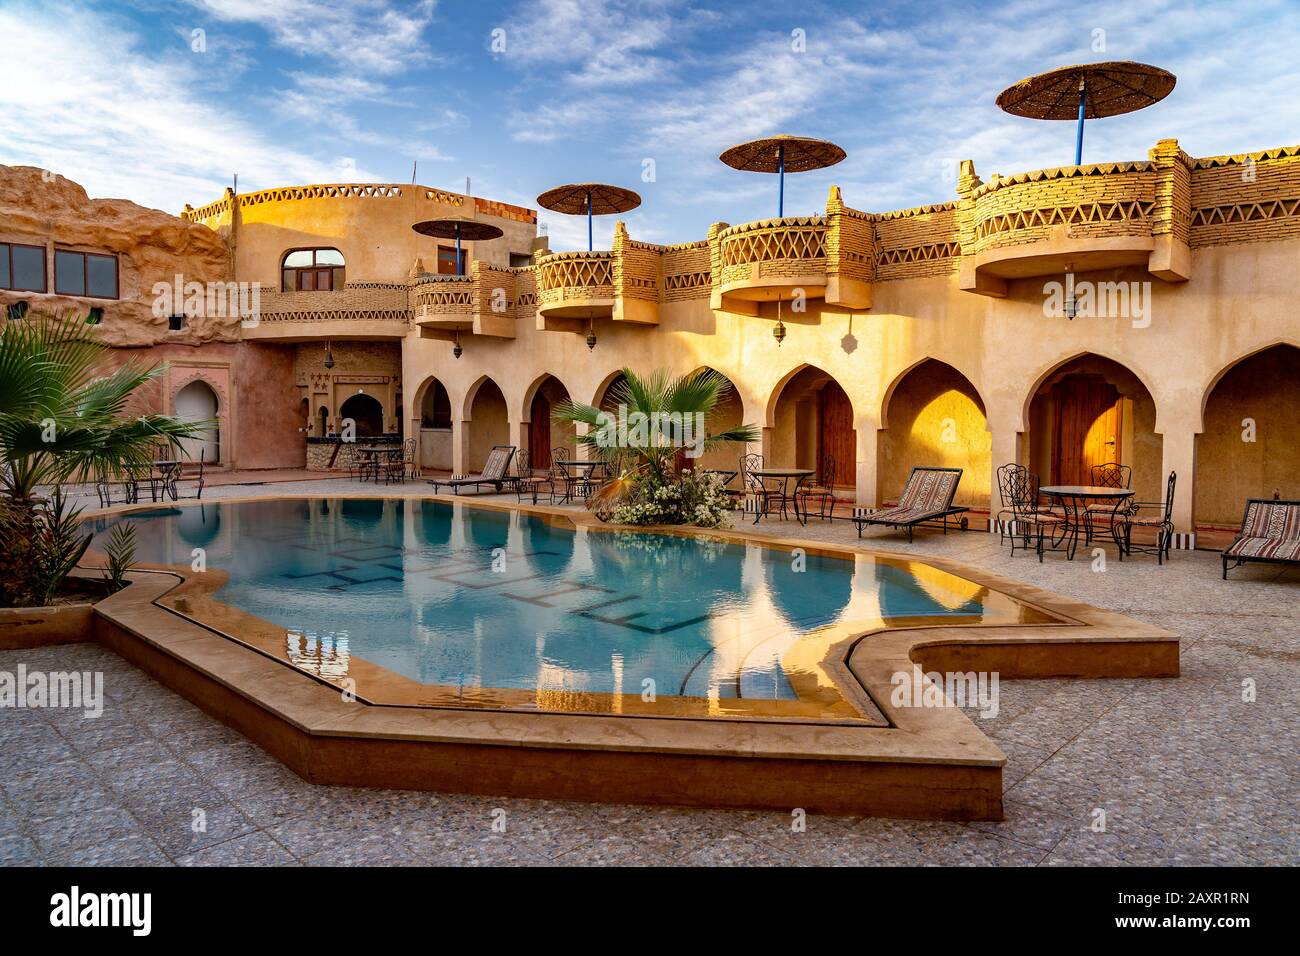 Hassilabied, Marocco - piscina all'aperto in un hotel marocchino Foto Stock